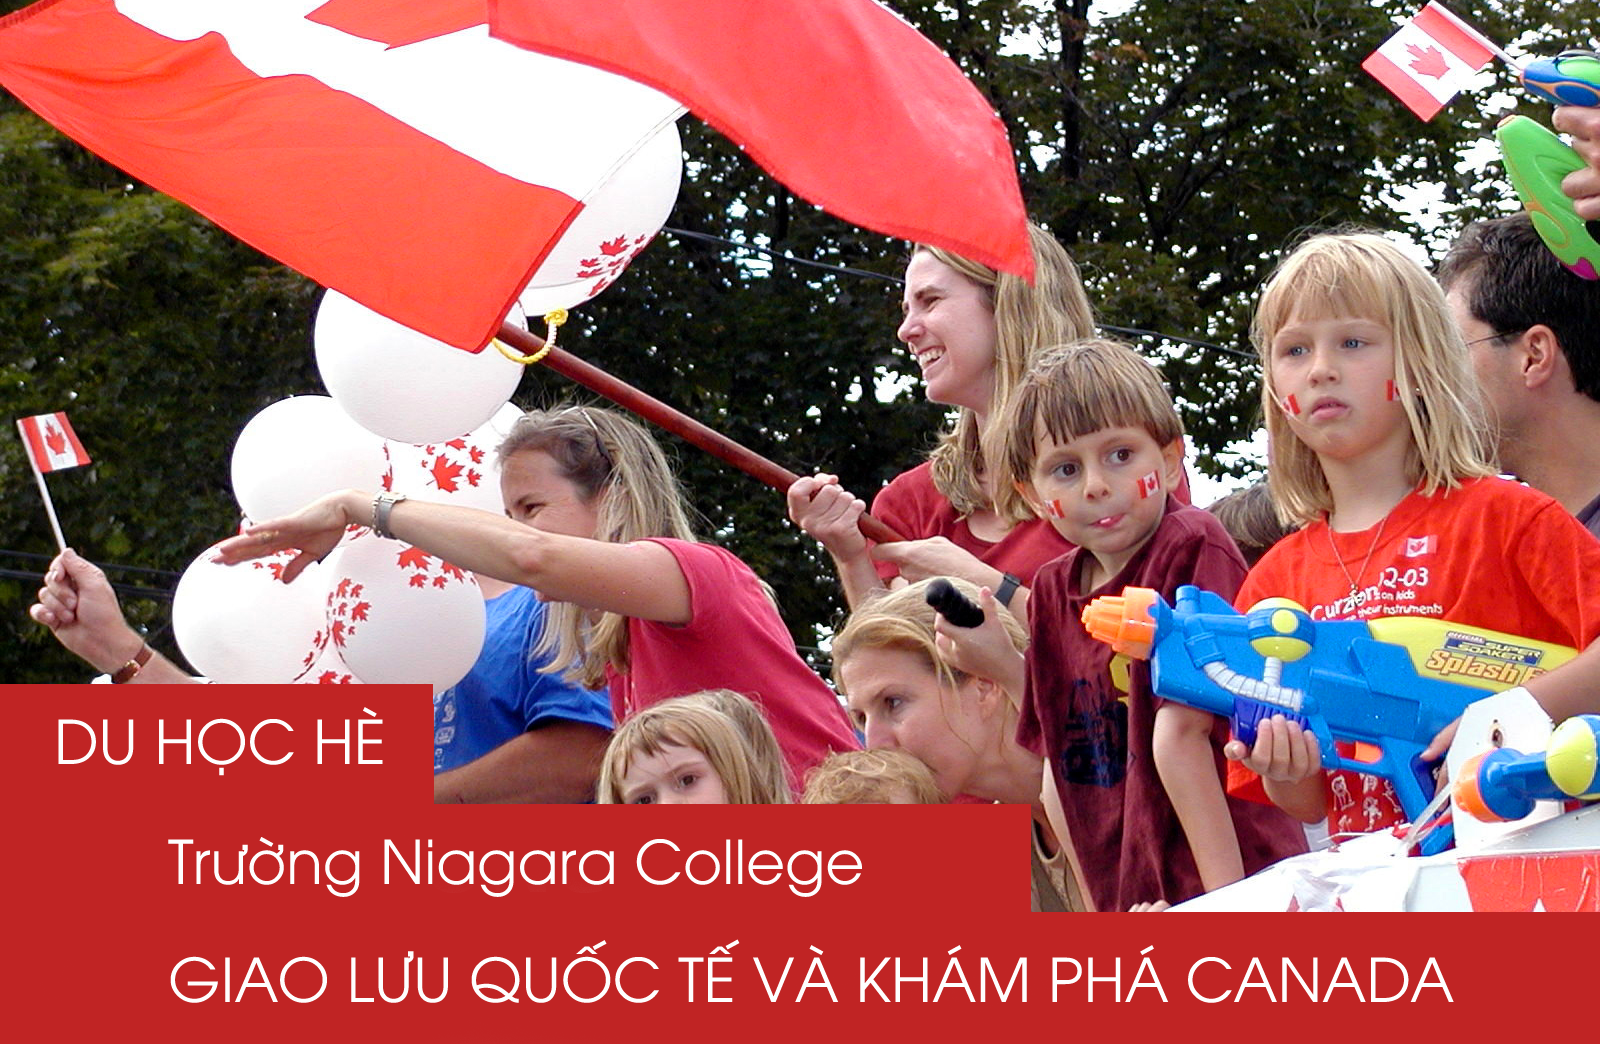 Du học hè trường Niagara College - Giao lưu quốc tế và khám phá Canada